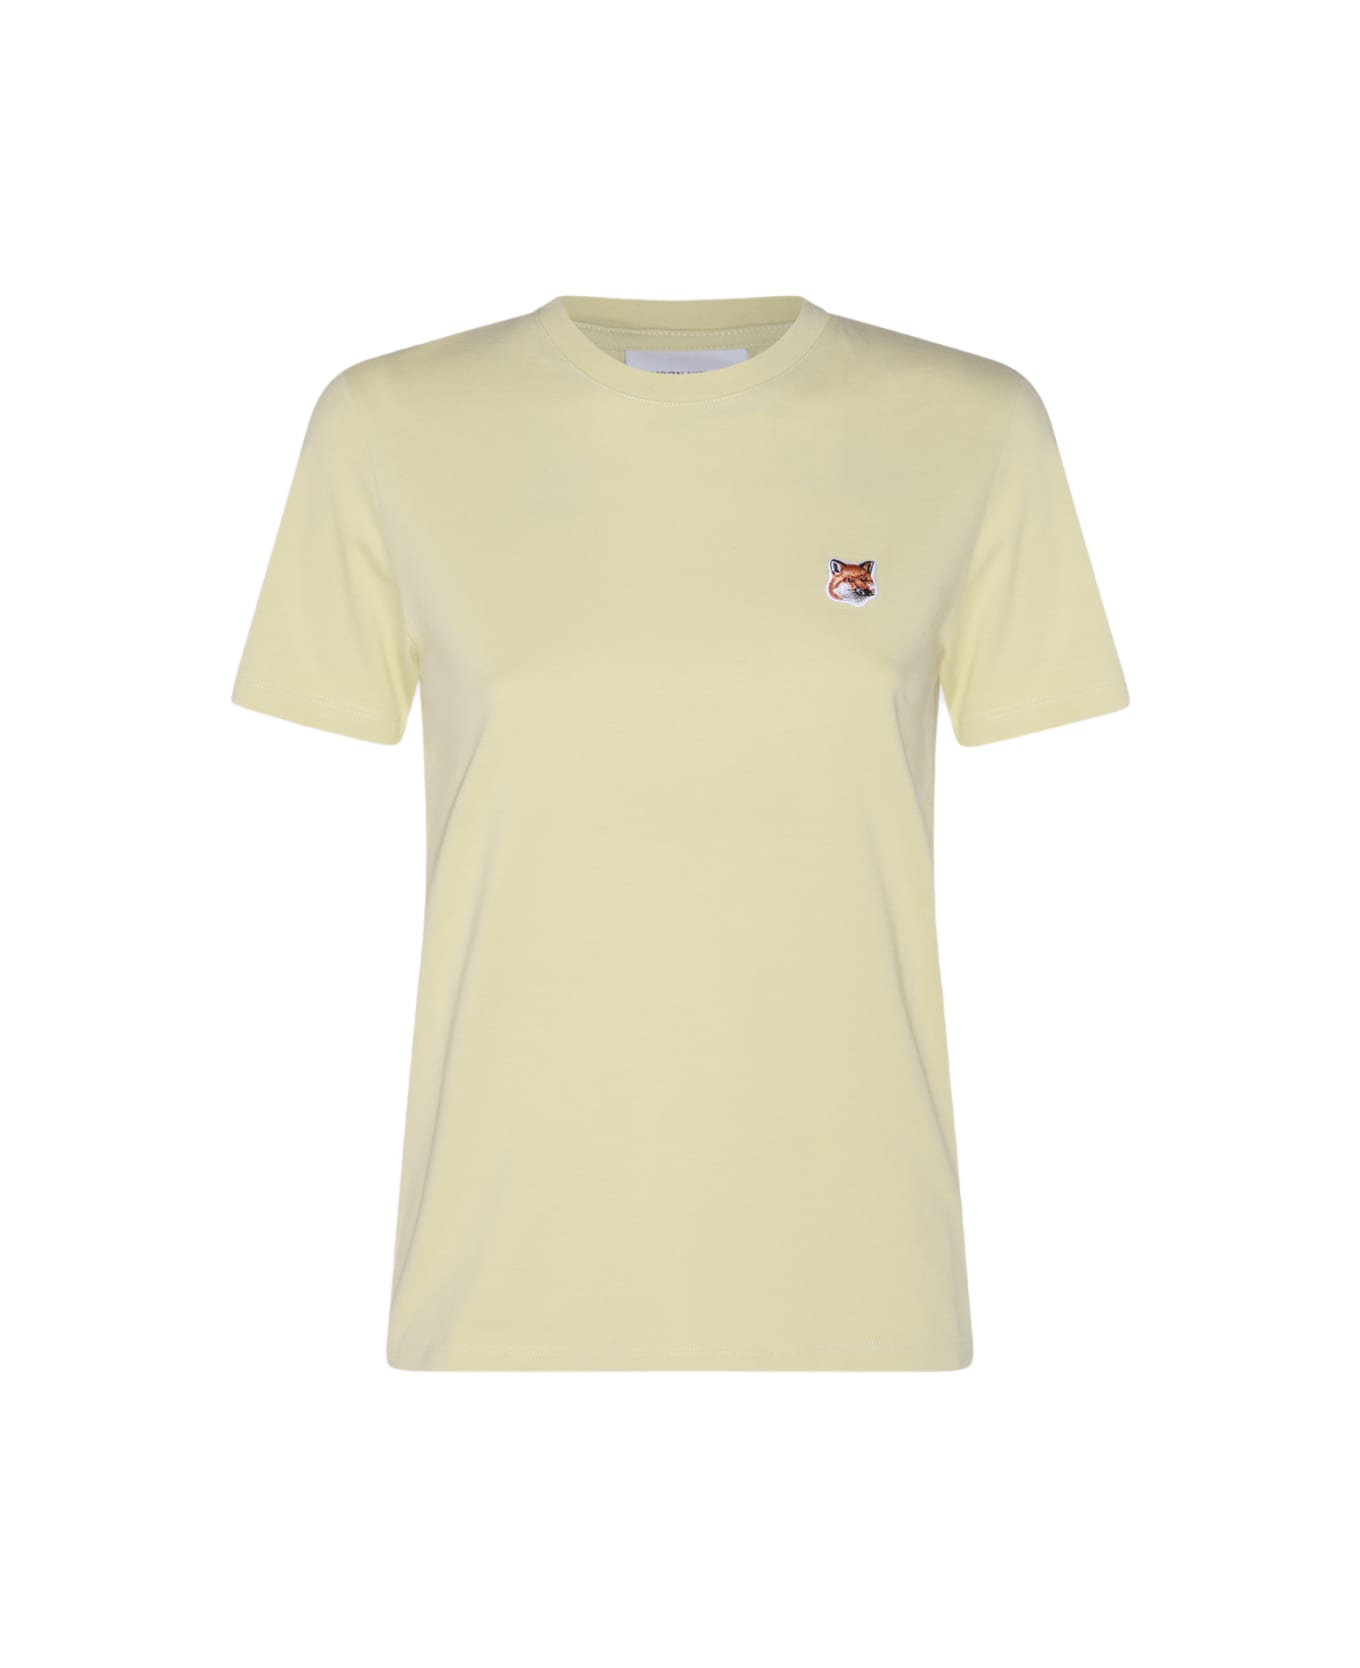 Maison Kitsuné Yellow Cotton Fox Head T-shirt - CHALK YELLOW